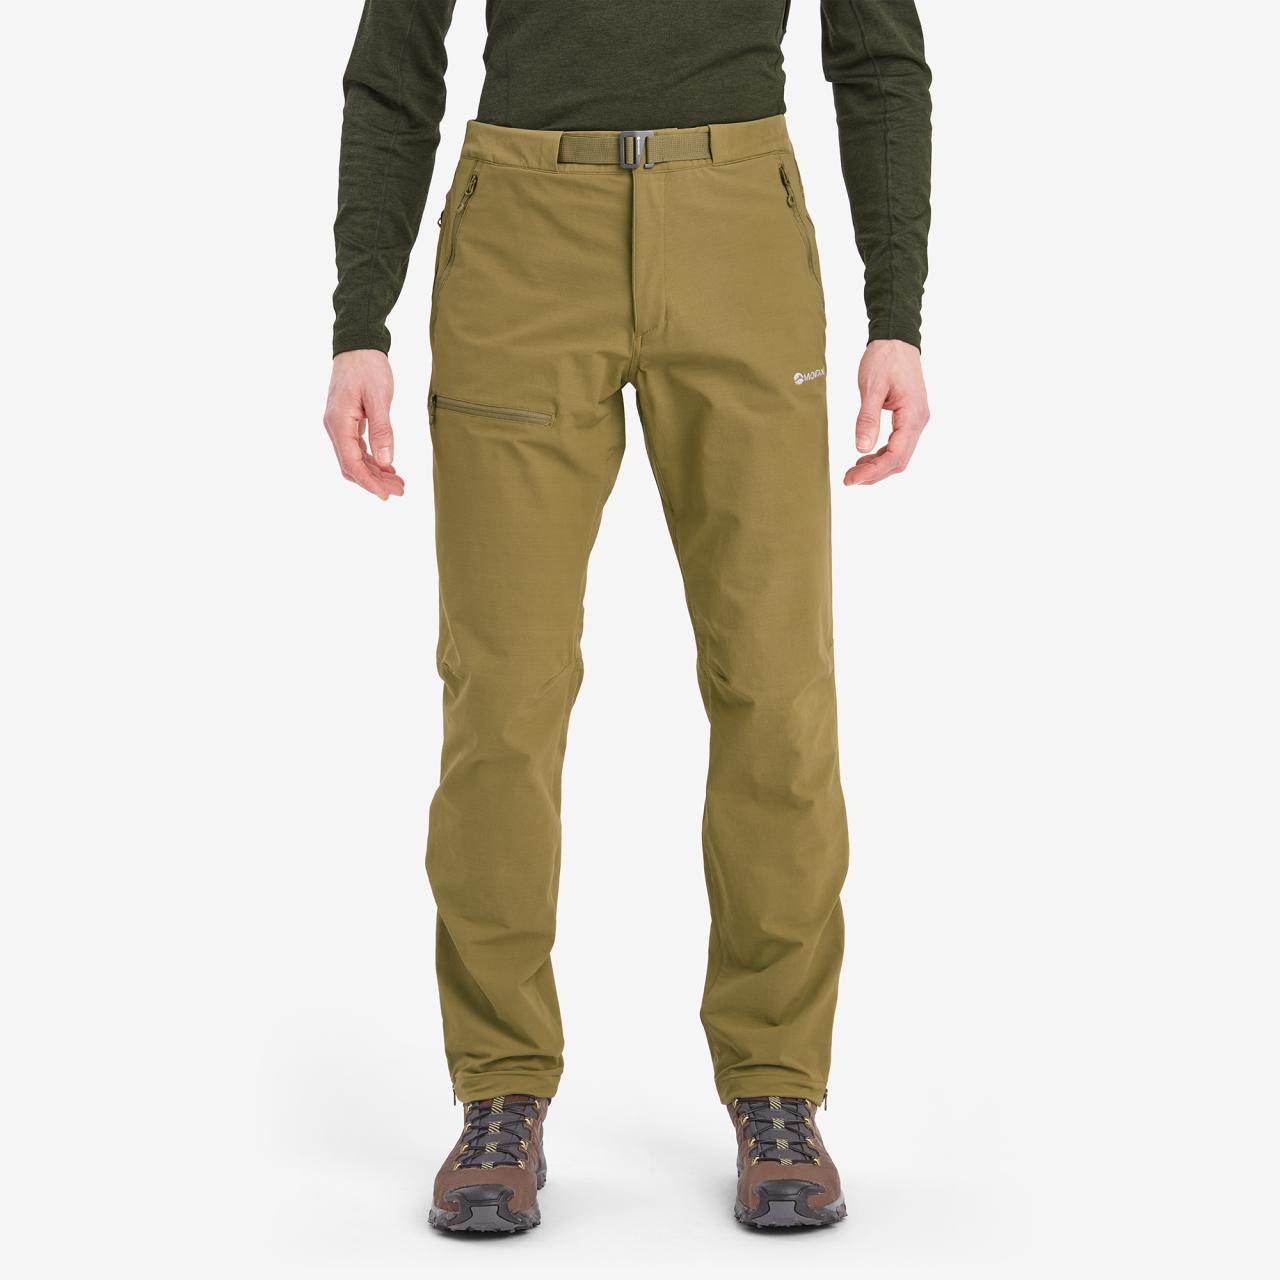 TENACITY PANTS REG LEG-OLIVE-36/XL pánské kalhoty zelené